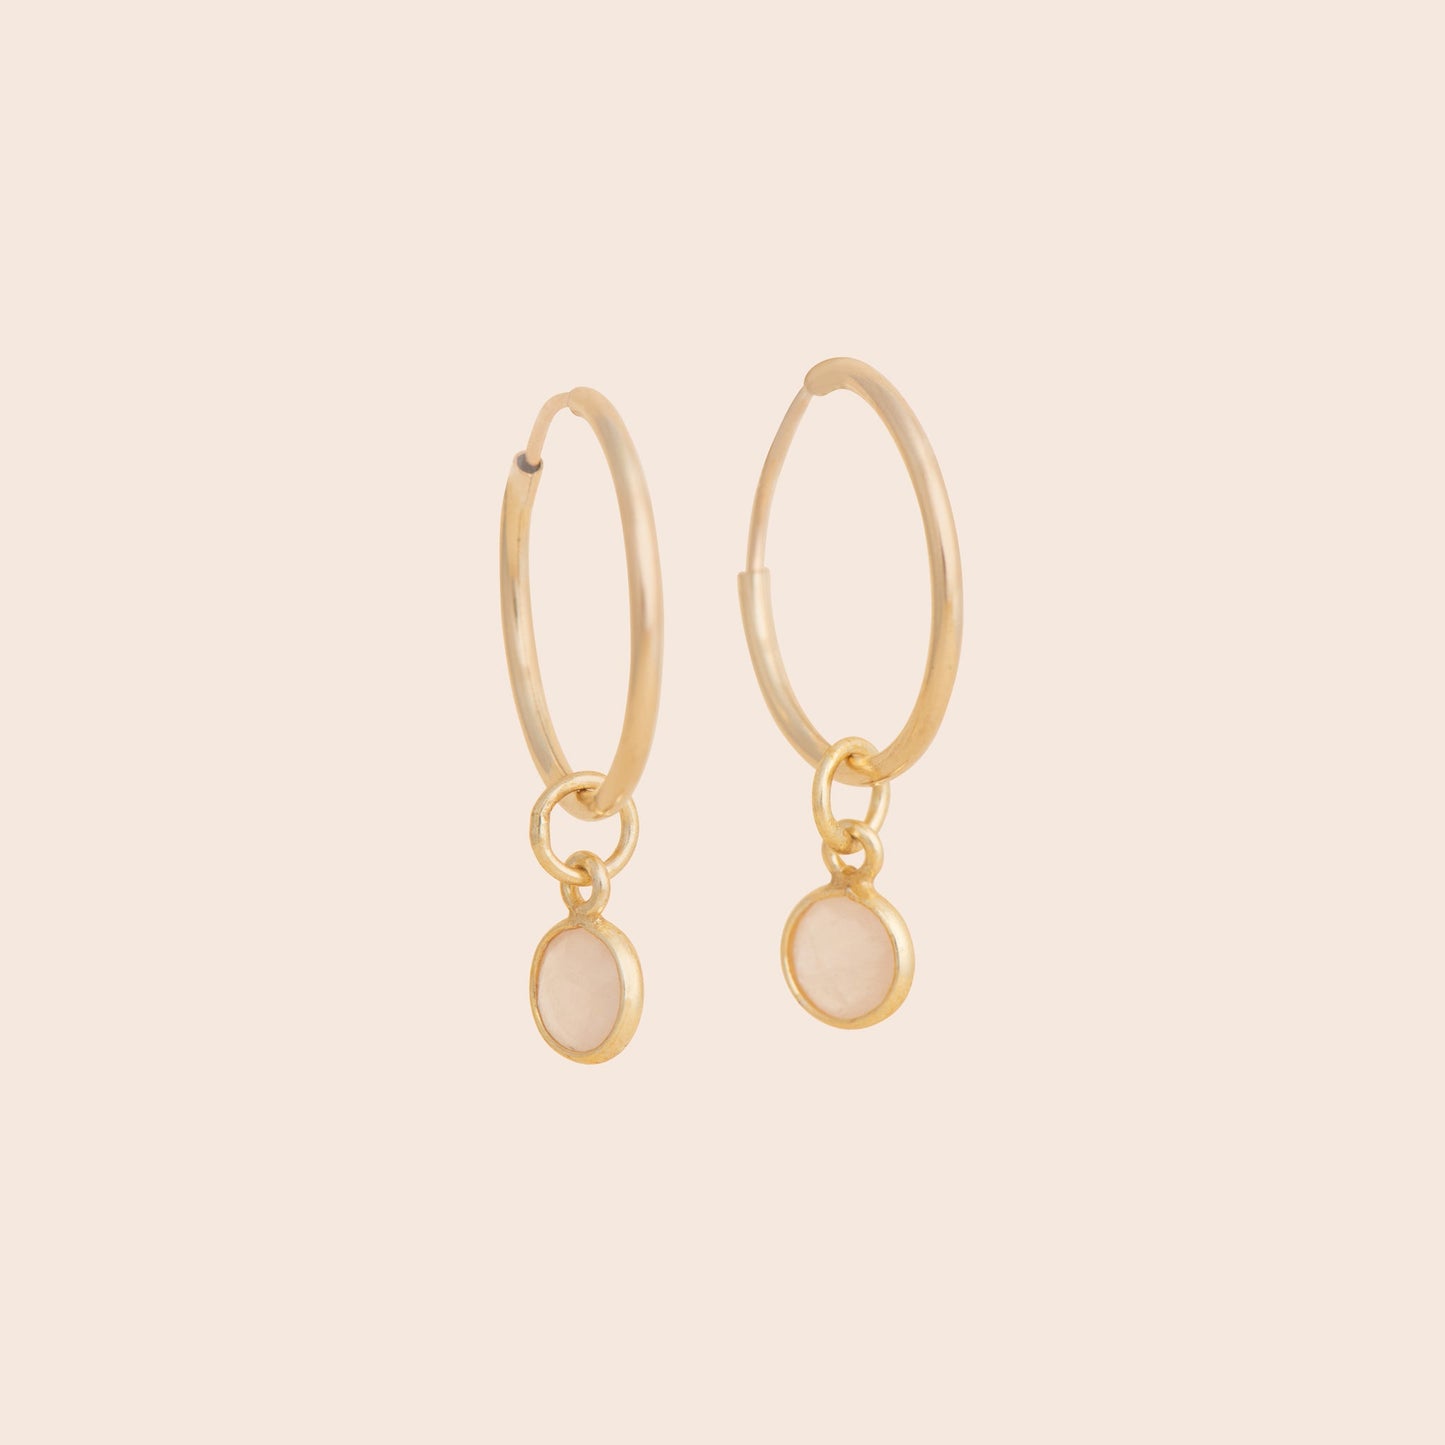 Rose Quartz Gold Filled Hoop Earrings - Gemlet